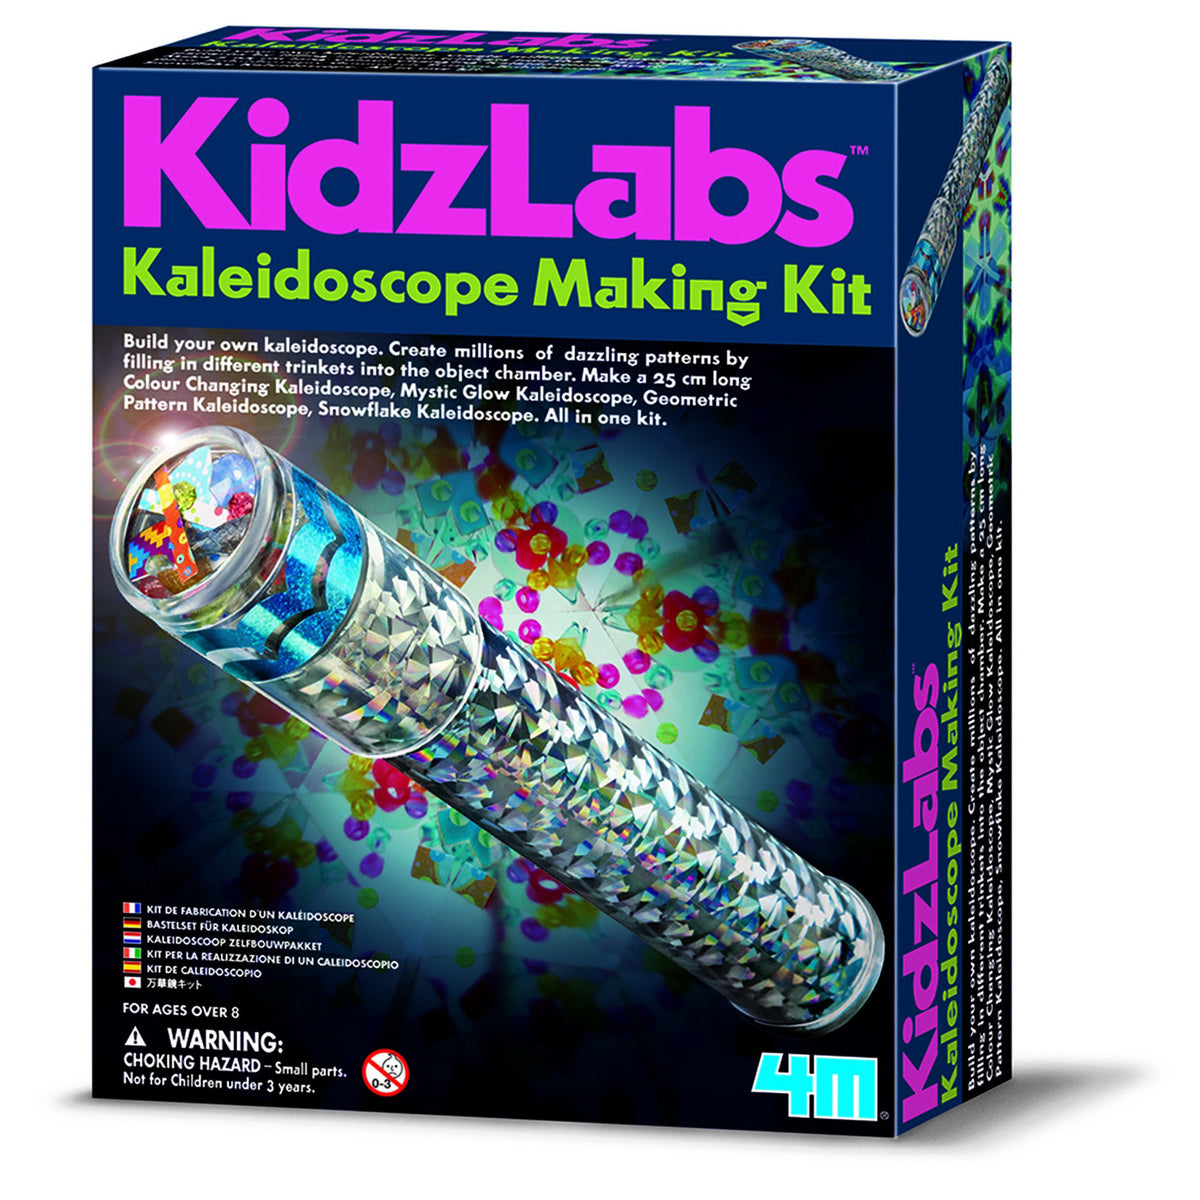 Kaleidoscope Making Kit